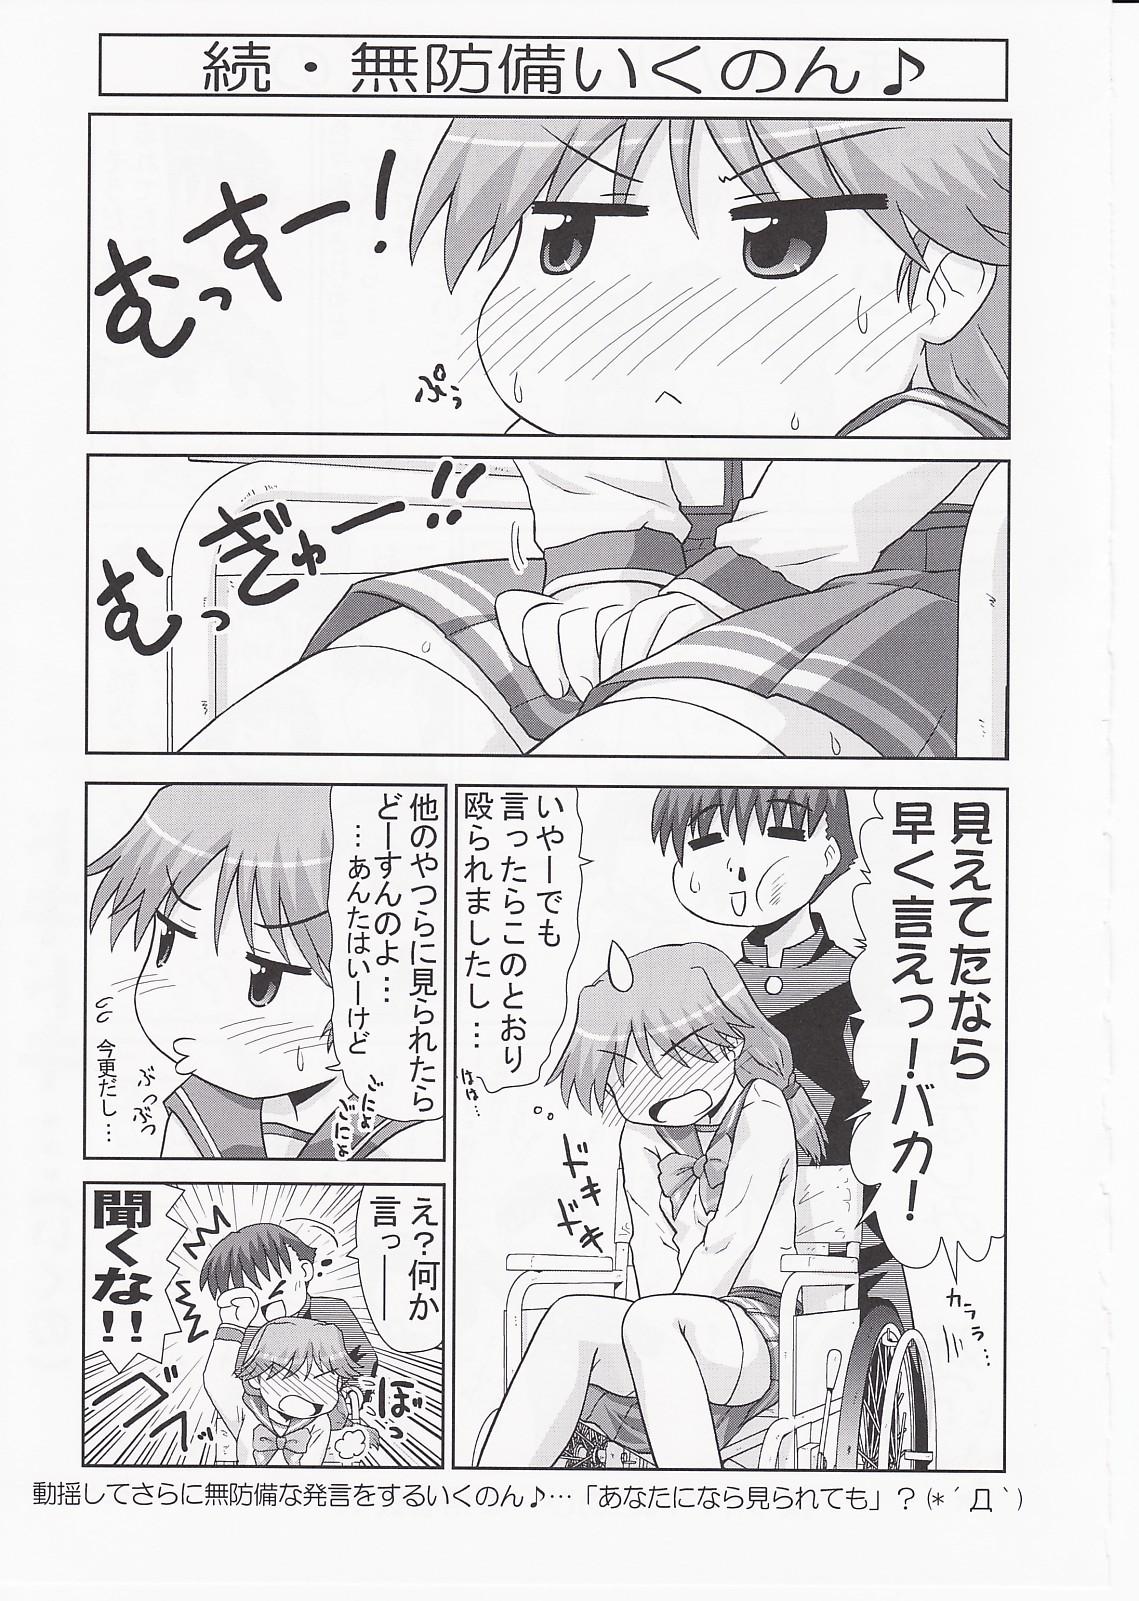 Ikunon Manga 3 19